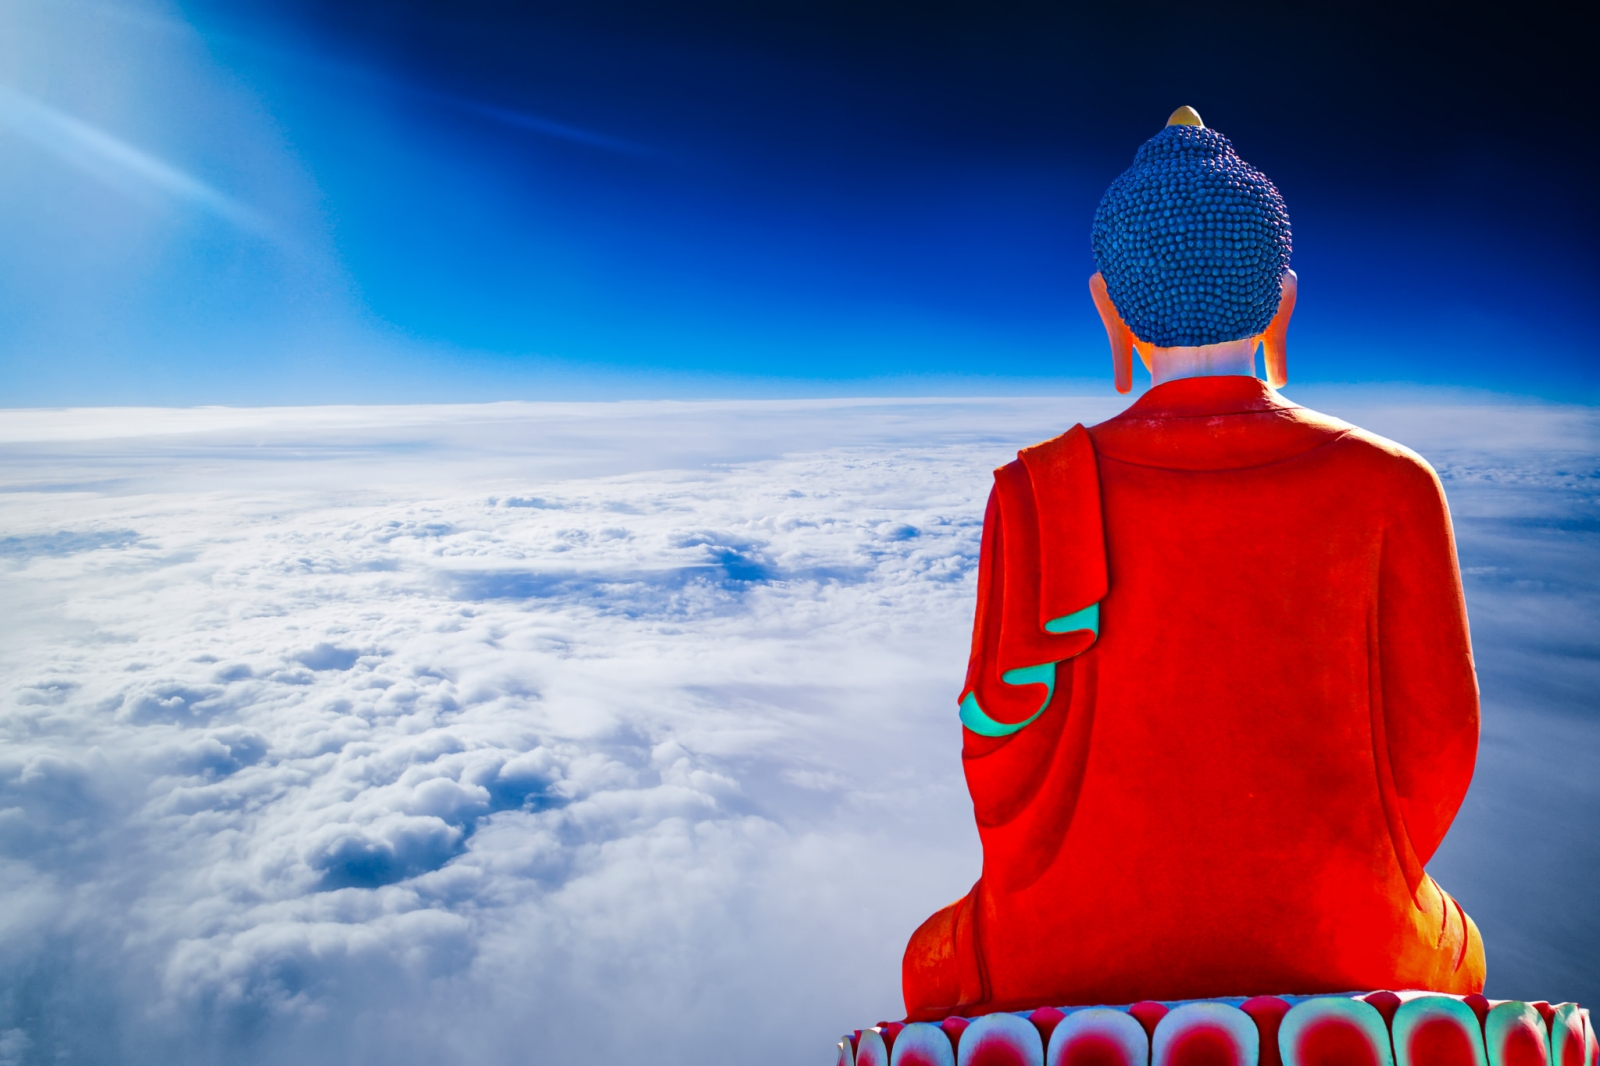 Hiểu rõ vận mệnh để làm chủ vận mệnh: 9 cách thay đổi số phận theo Phật giáo